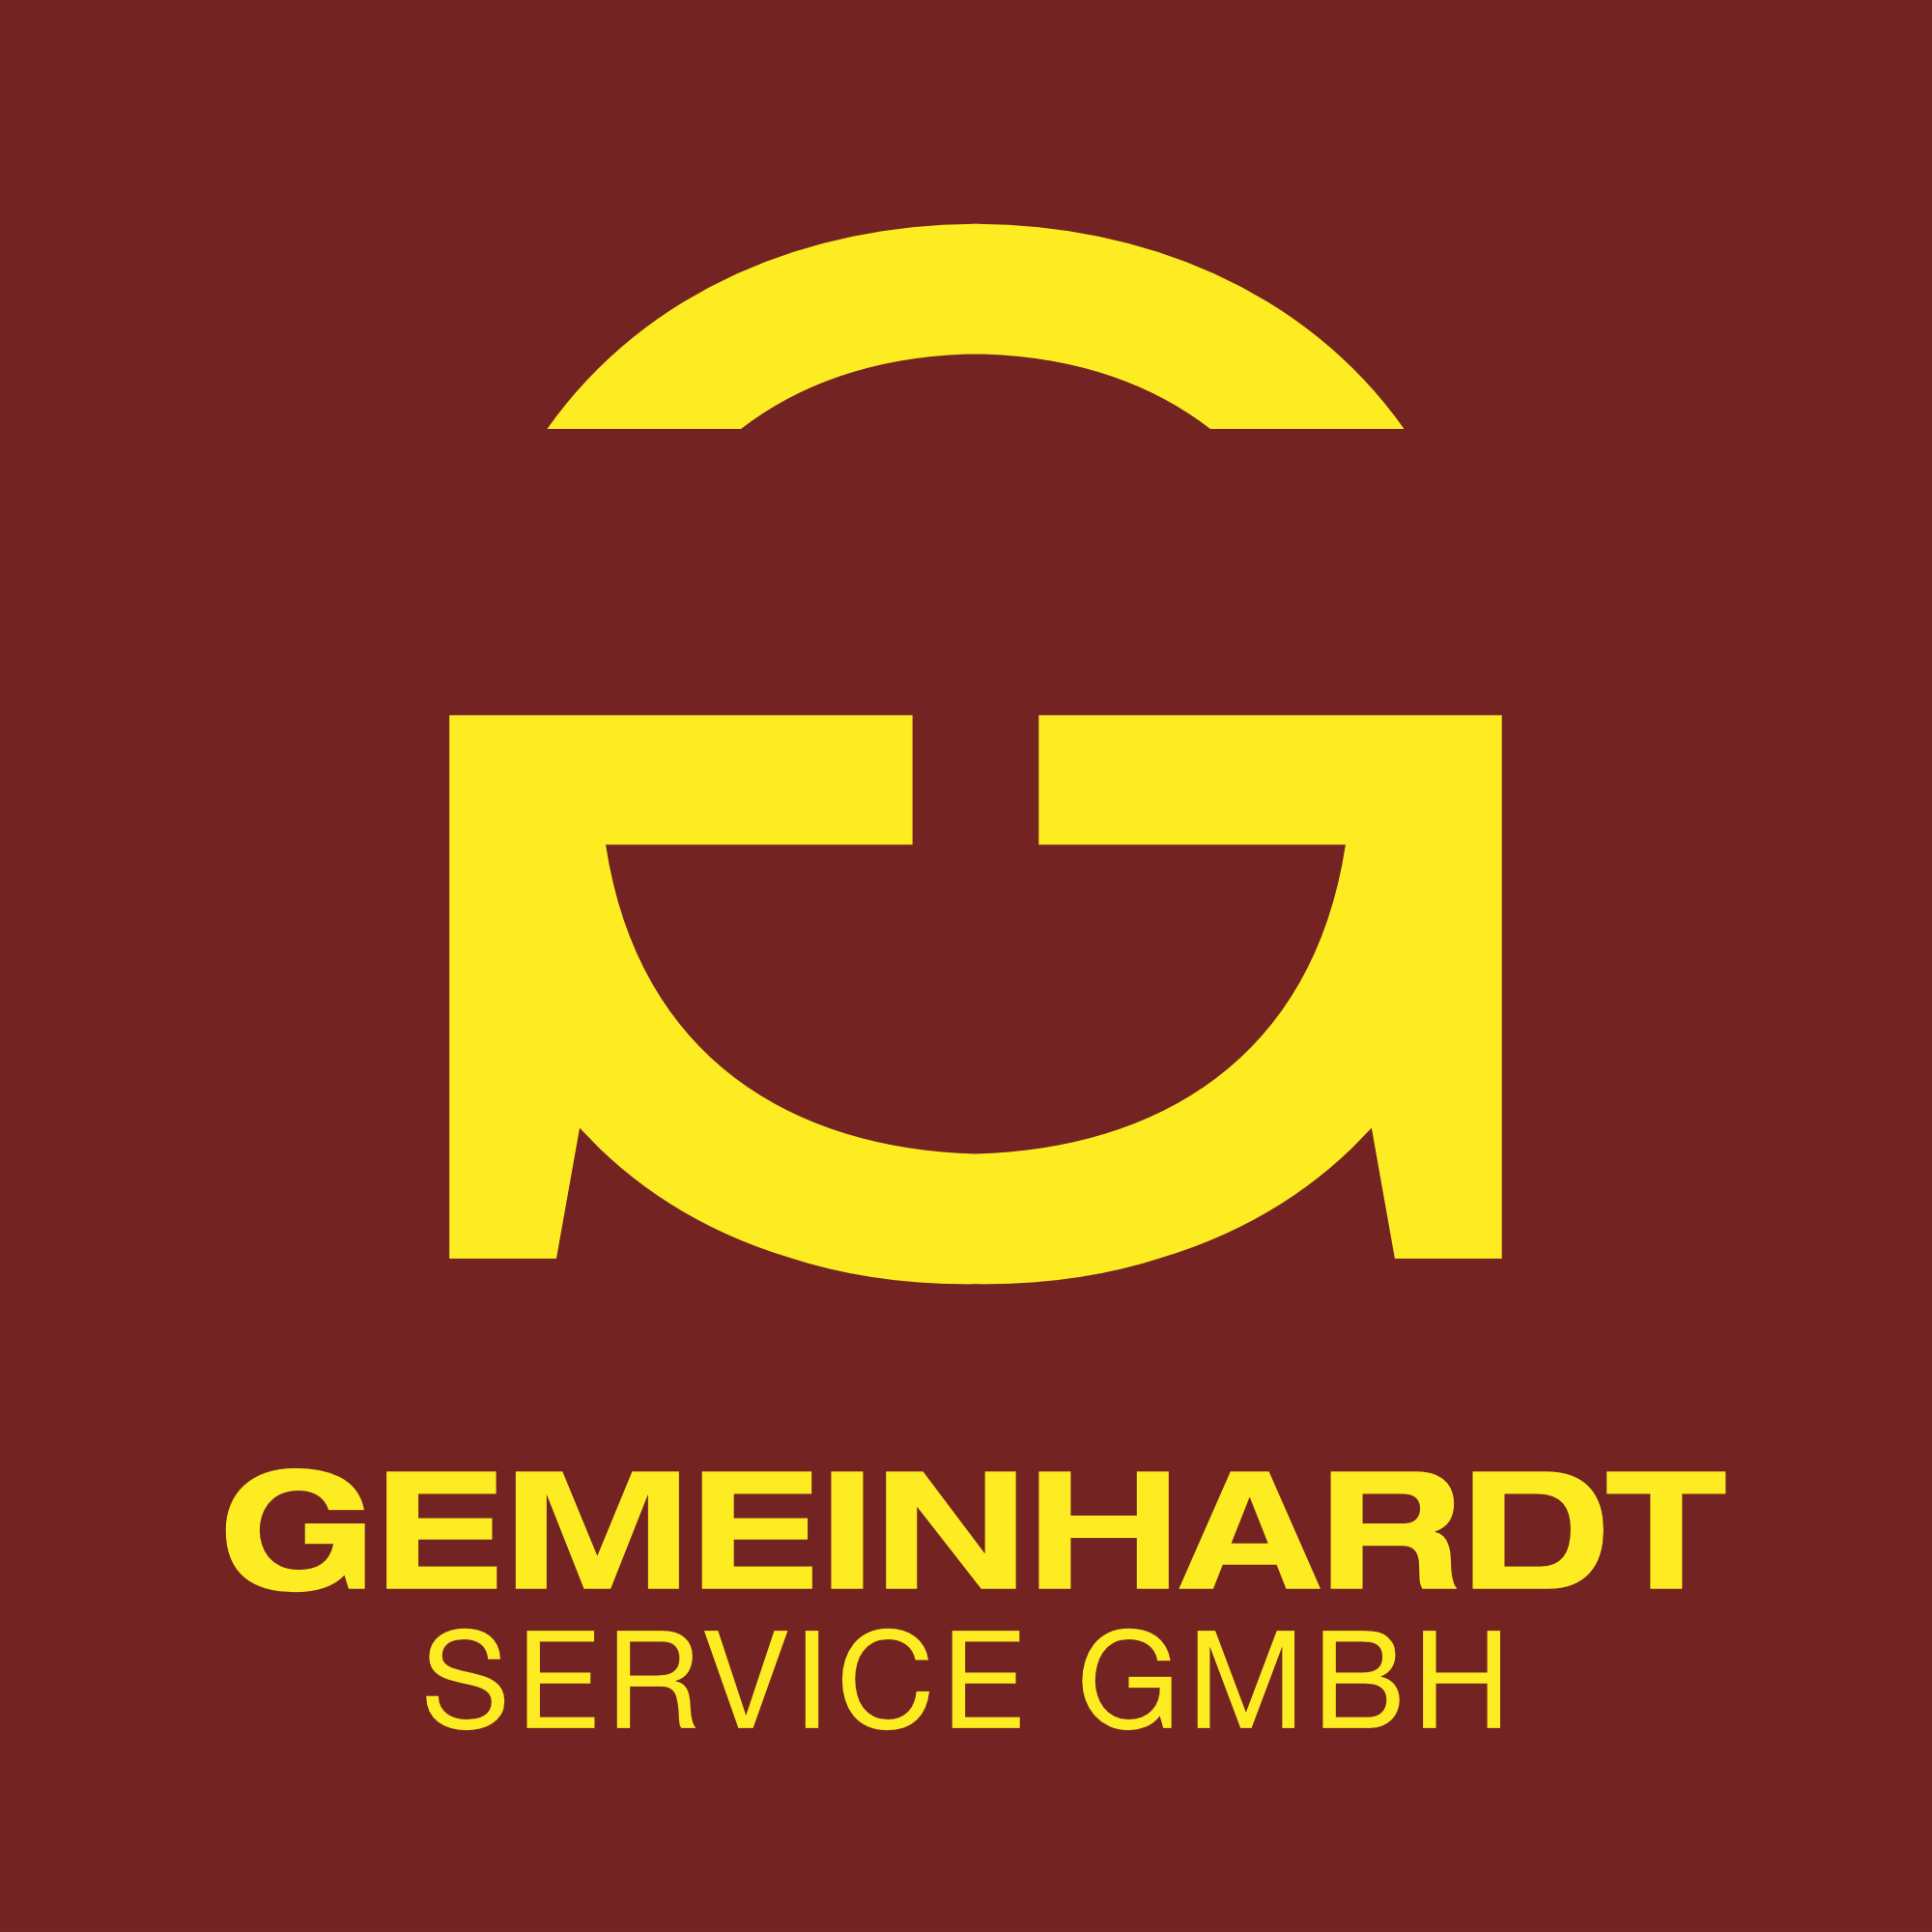 GEMEINHARDT SERVICE GMBH Logo